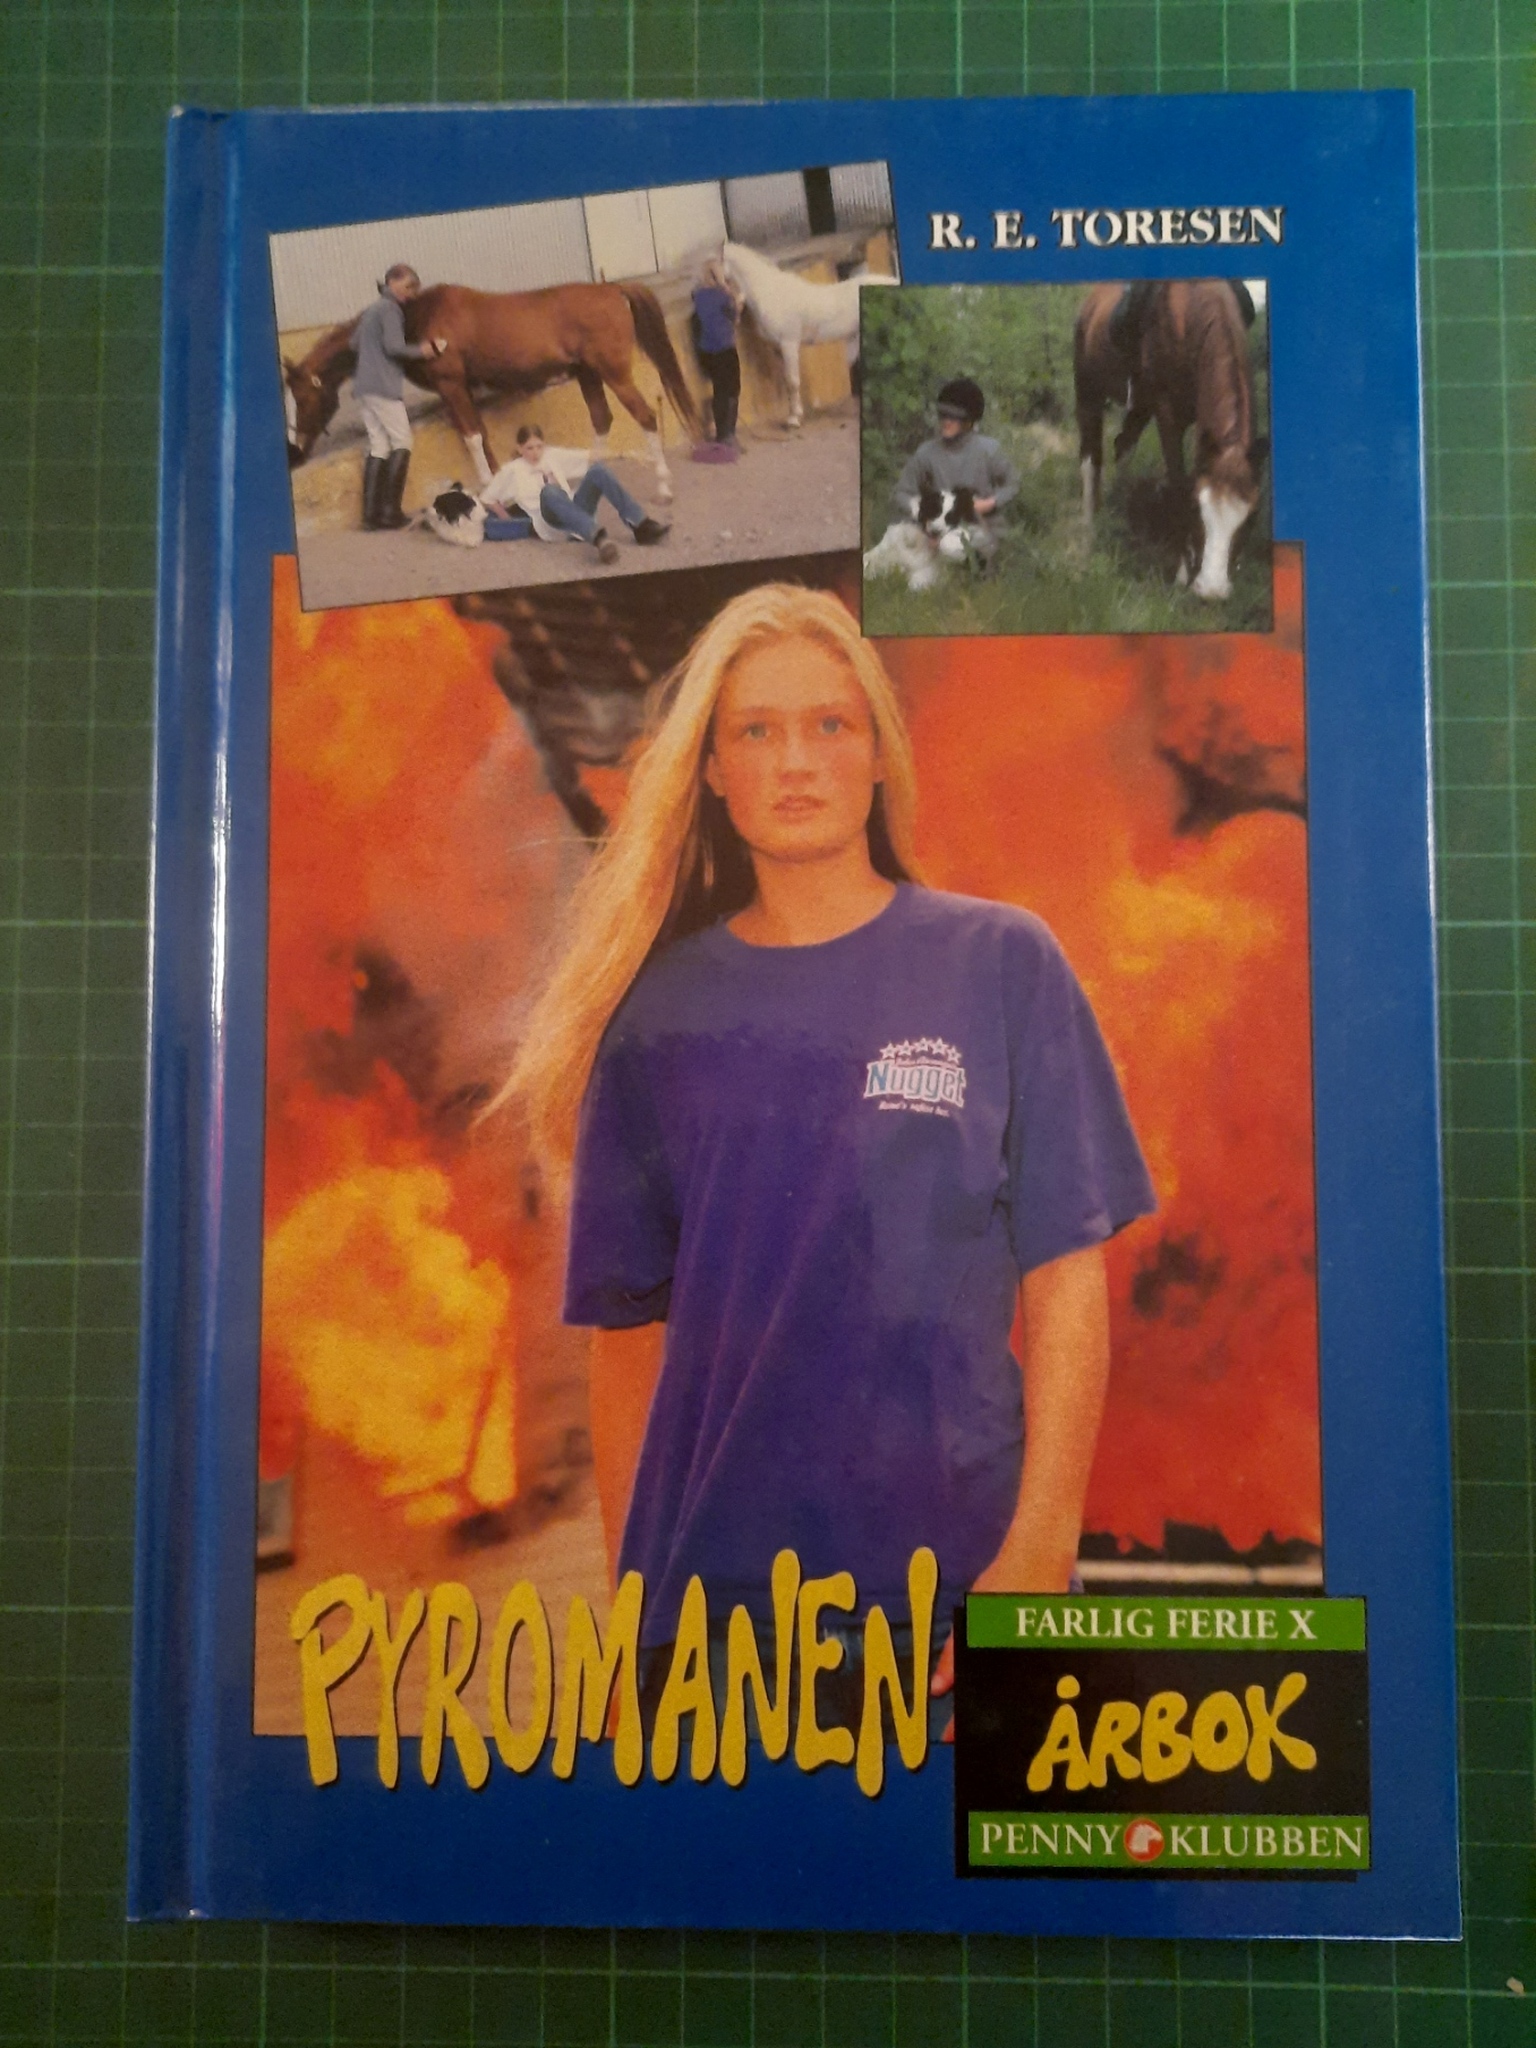 Pennyklubben Årbok 1997 - Pyromanen